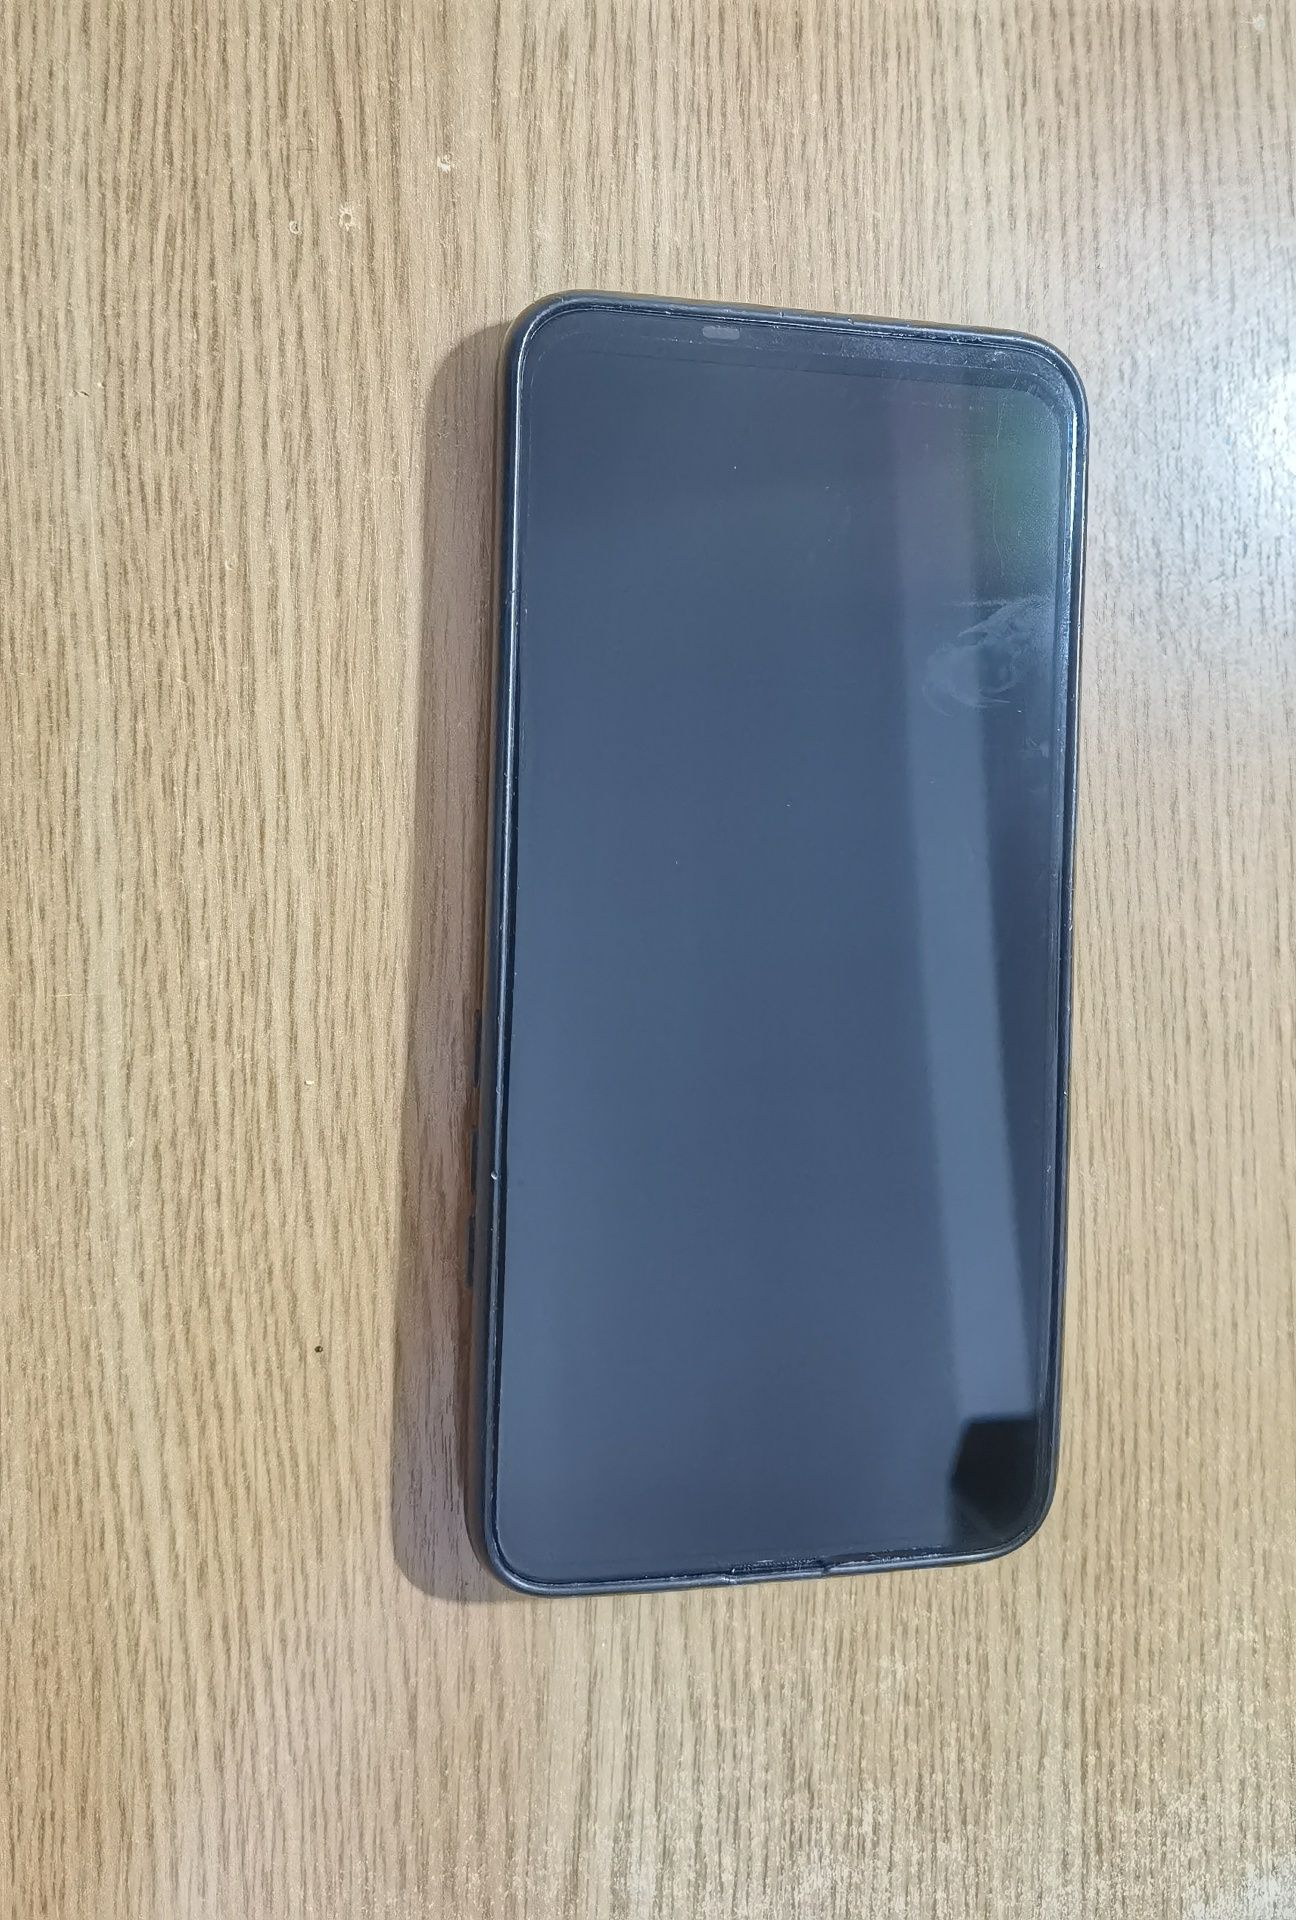 Huawei P Smart Z dual SIM